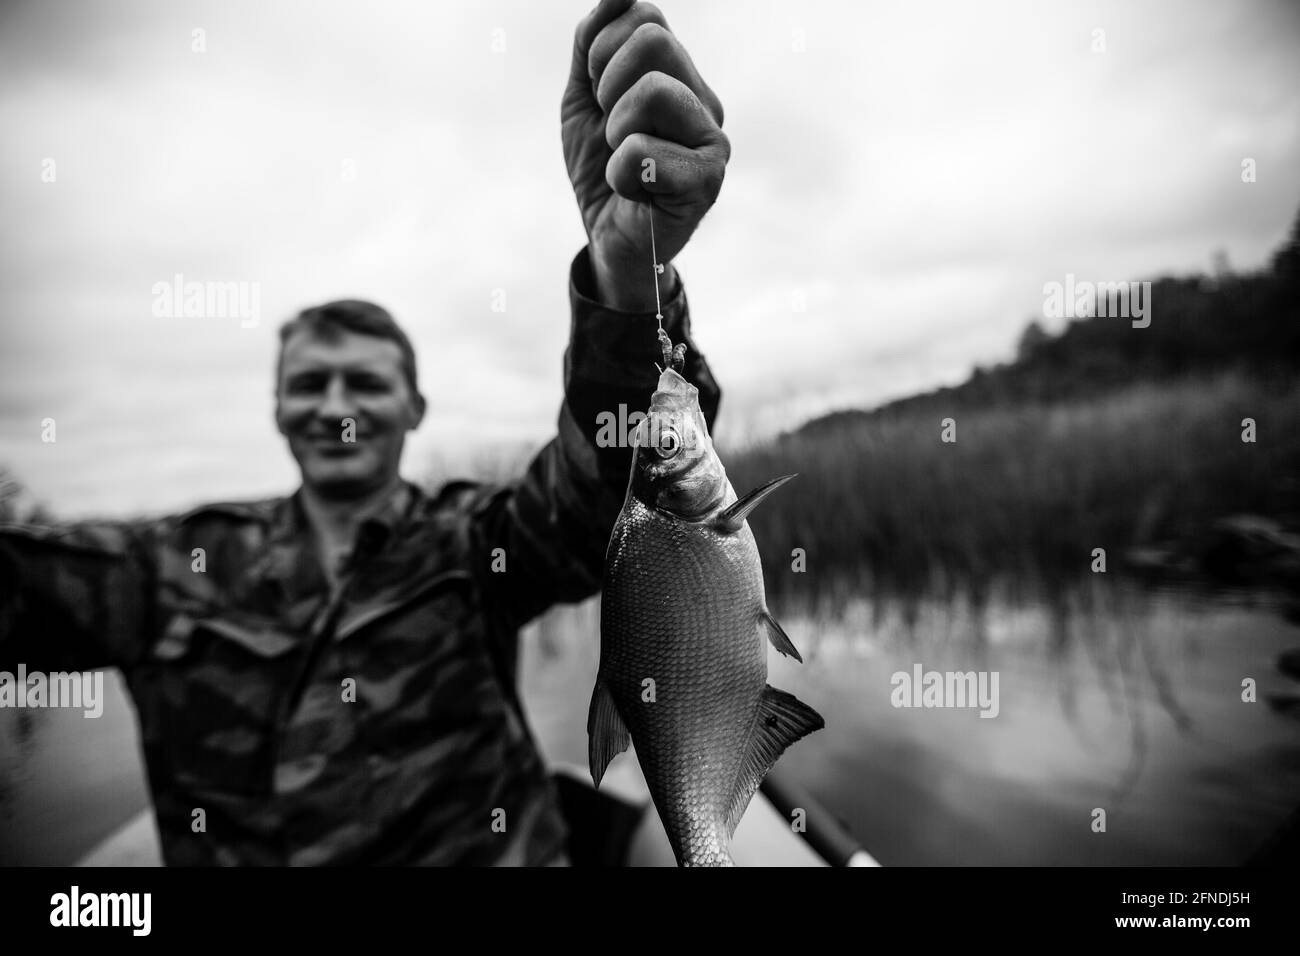 Fischerrute auf dem Fluss auf einem Gummiboot. Schwarzweiß-Foto. Stockfoto